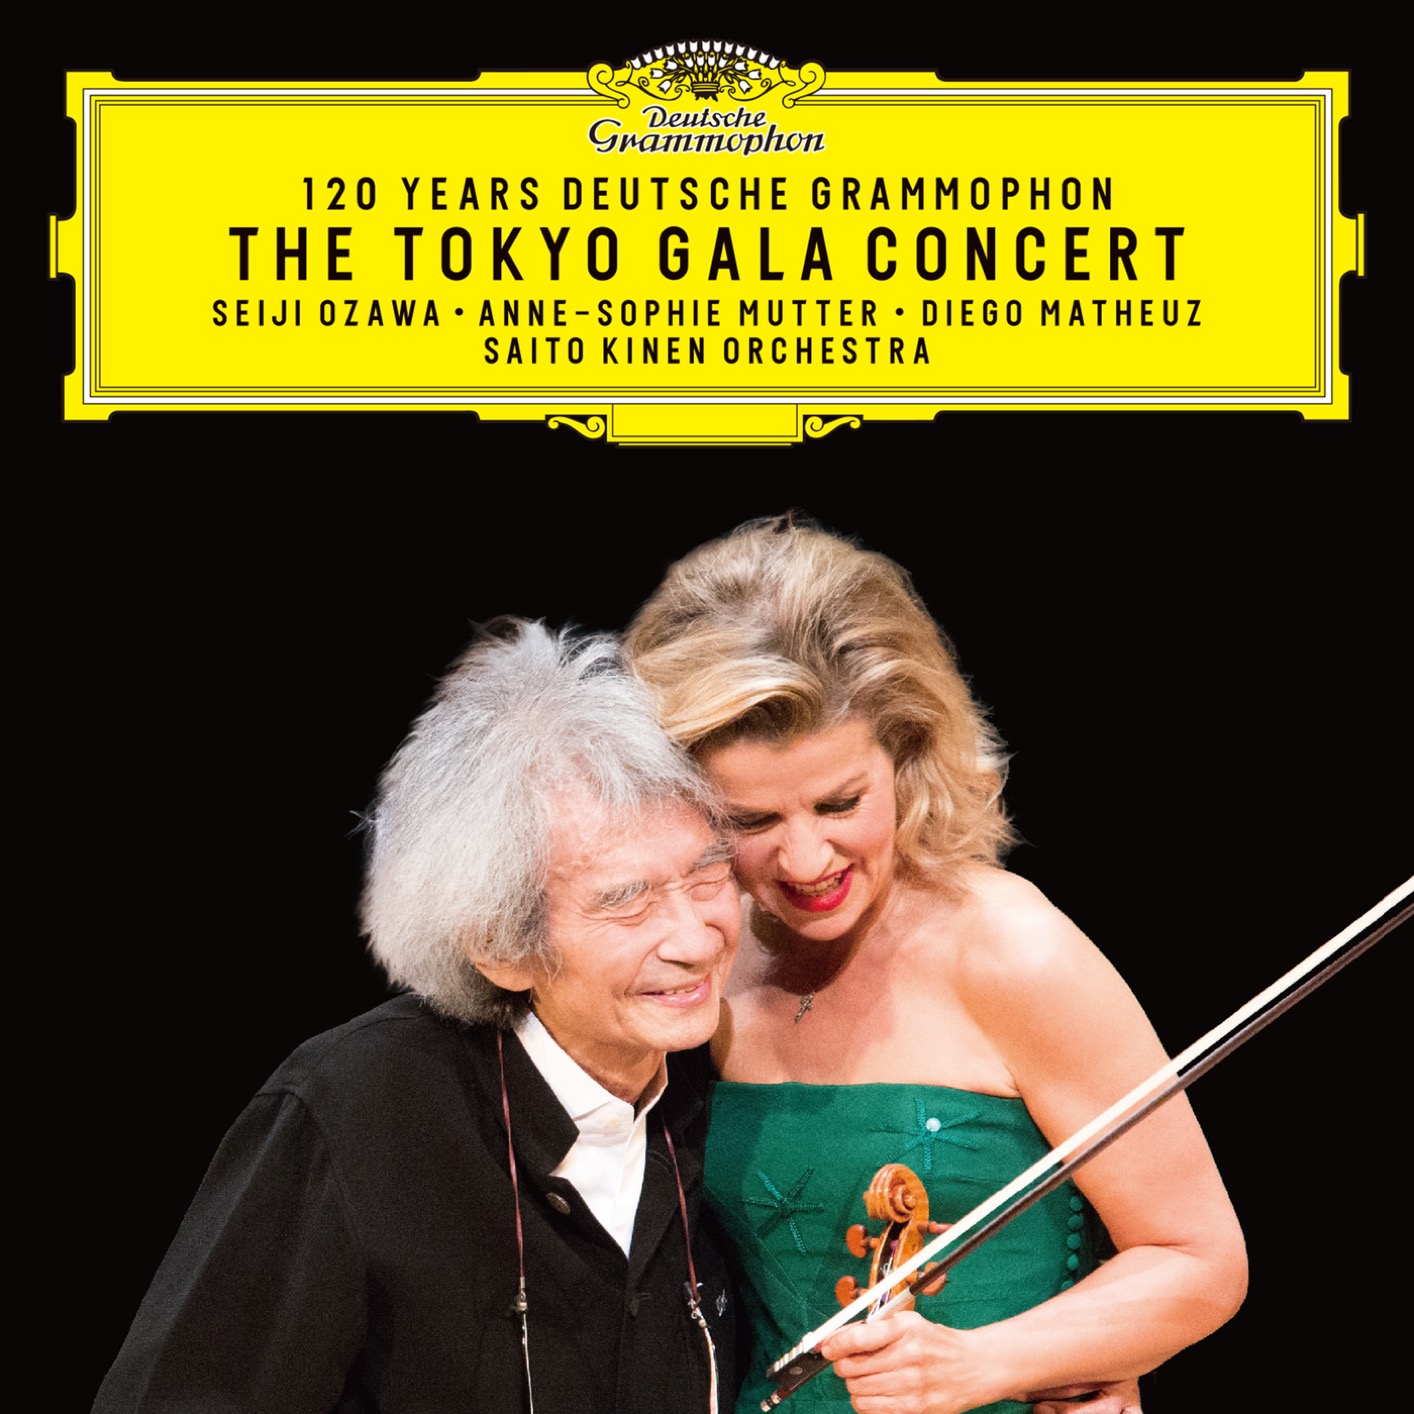 Anne-Sophie Mutter, Seiji Ozawa, Diego Matheuz, Saito Kinen Orchestra - 120 Years Deutsche Grammophon - The Tokyo Gala Concert (2019) [FLAC 24bit/96kHz]